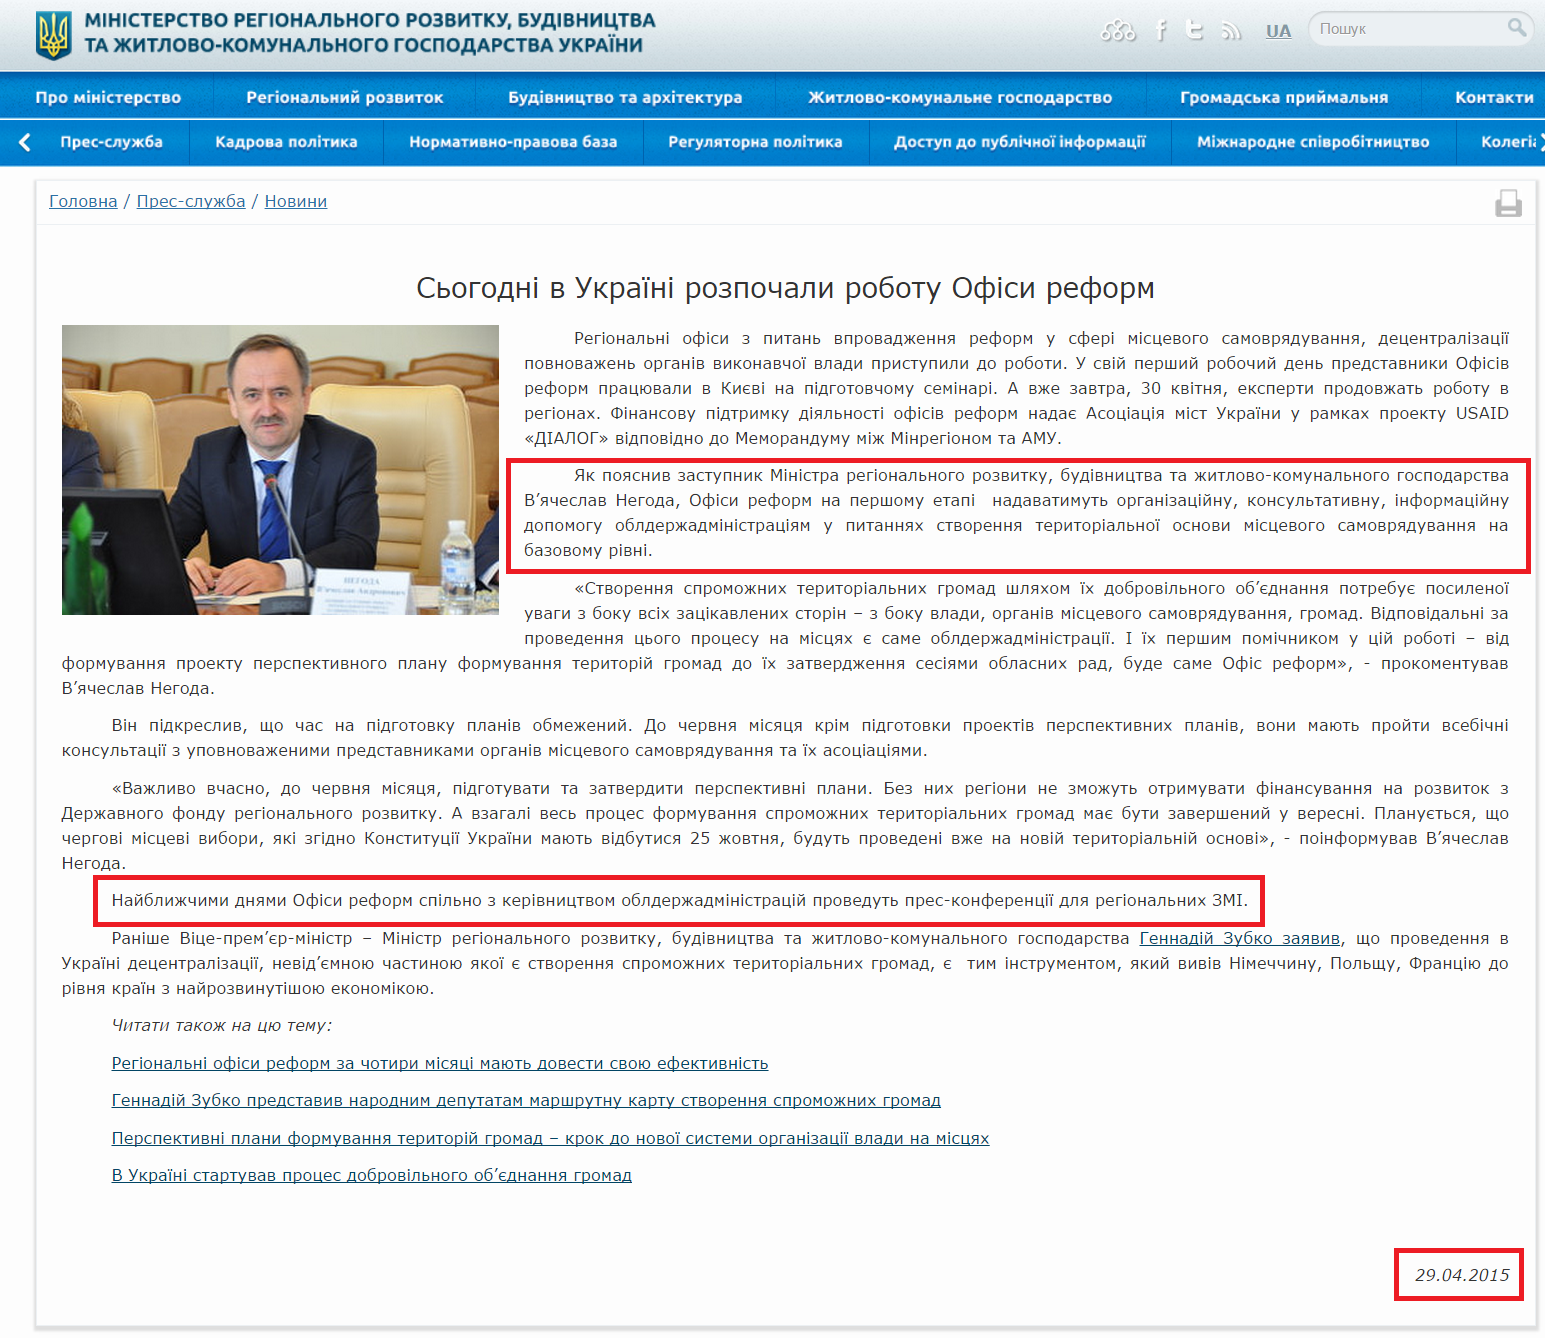 http://www.minregion.gov.ua/news/sogodni-v-ukrayini-rozpochali-robotu-ofisi-reform-262780/